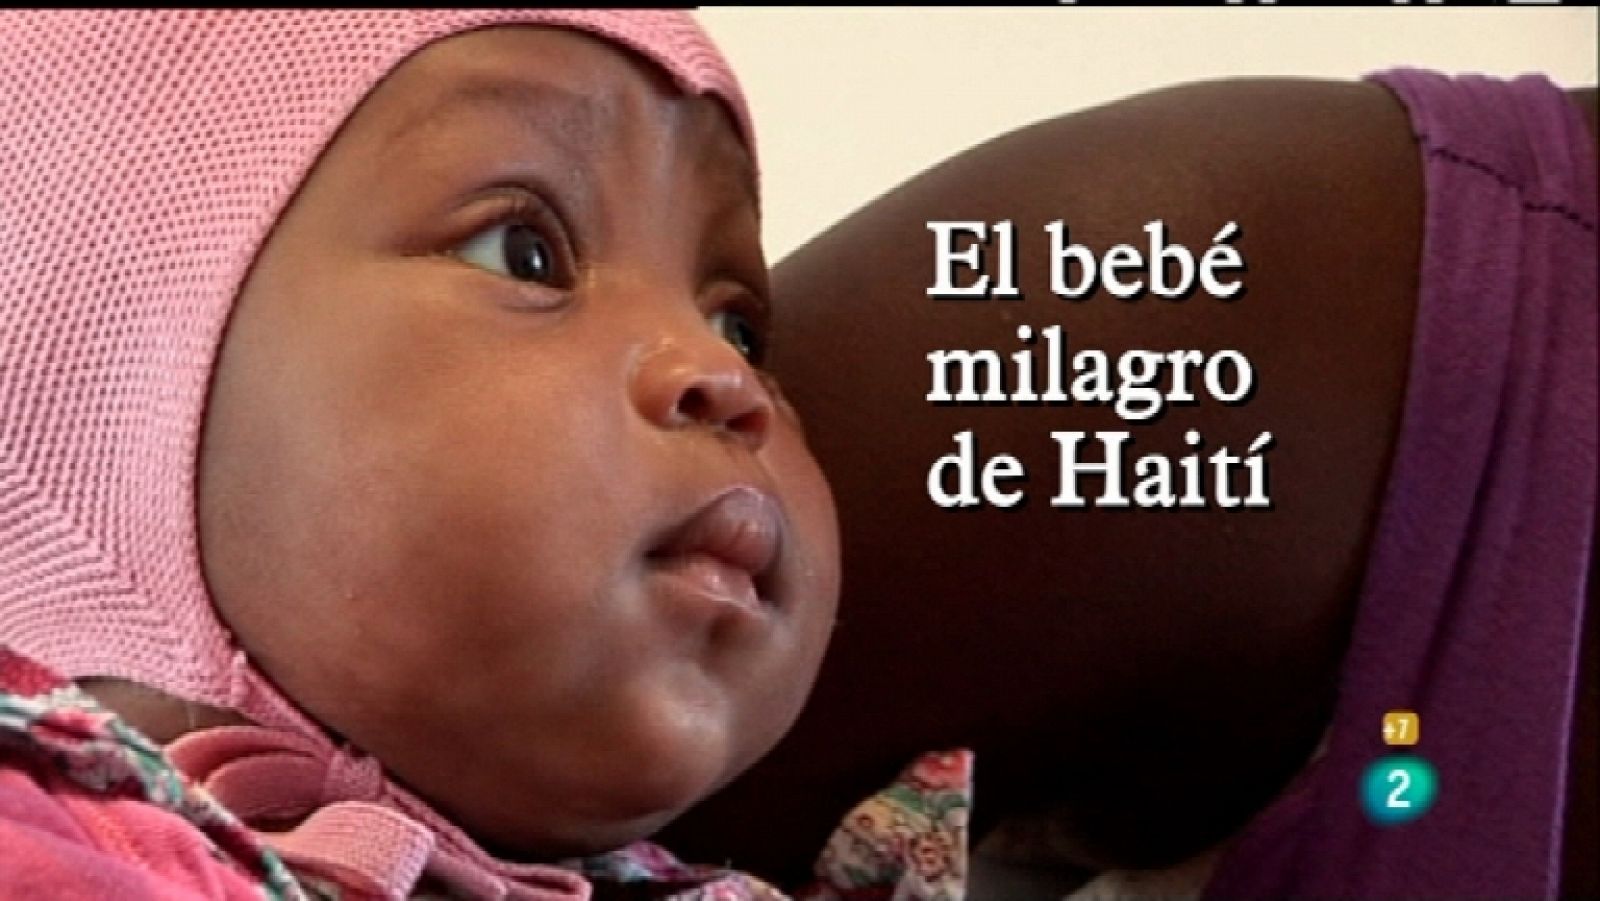 Documentos TV - El bebé milagro de Haití  - Ver ahora 